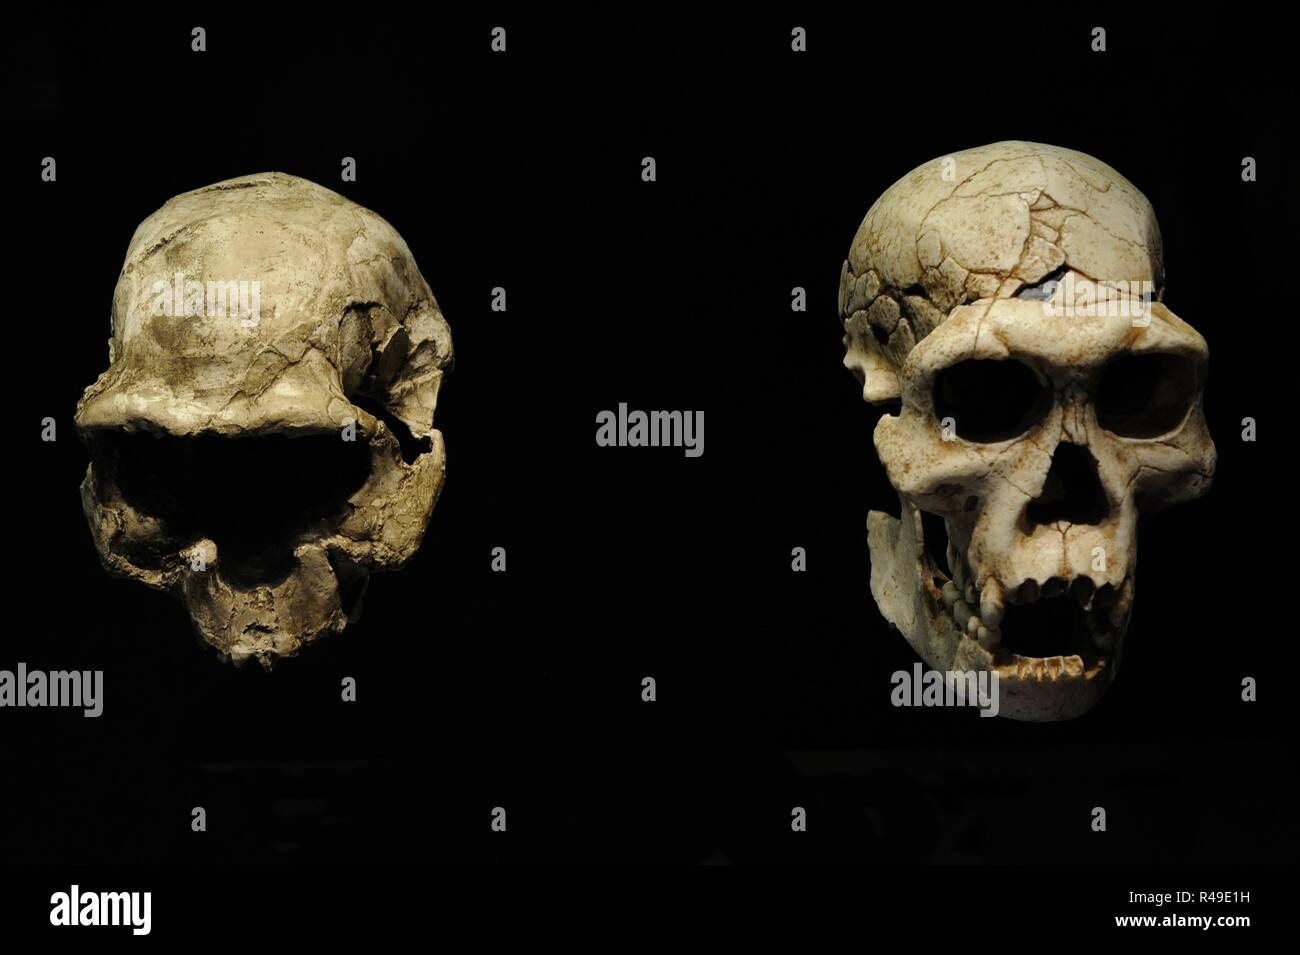 Homo georgicus. Sulla sinistra, la riproduzione del cranio D2282 probabilmente di una giovane donna. Capacità craniale, 650-660 cc; sulla destra, riproduzione del cranio D2700 e la ganascia D2735 corrispondente ad un maschio. Peso, 40-50 Kg. Dimensioni, 150 cm. Capacità craniale, 600-700 cc. 1,8 milioni di anni. Pleistocene inferiore. Habitat, foreste di steppa. Trovato in Dmanisi (Georgia). Museo Archeologico Nazionale. Madrid. Spagna. Foto Stock